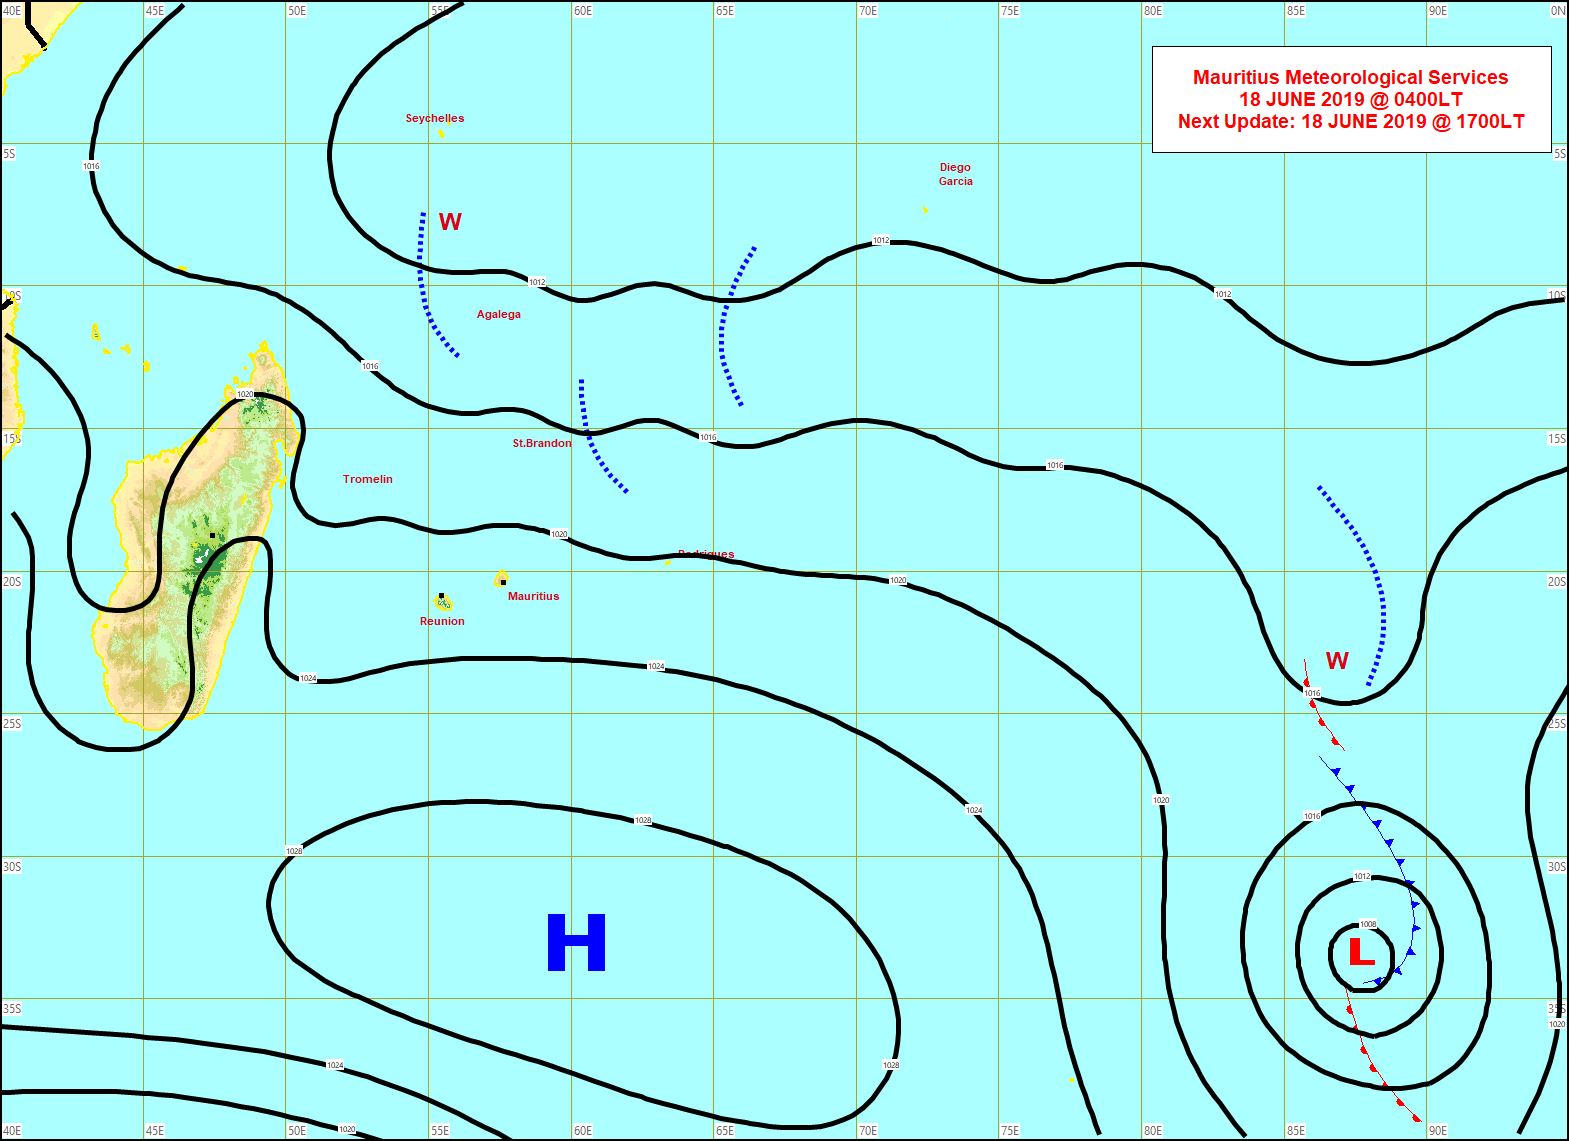 Analyse de la situation de surface ce matin. L'anticyclone(H) de 1030hpa domine. MMS